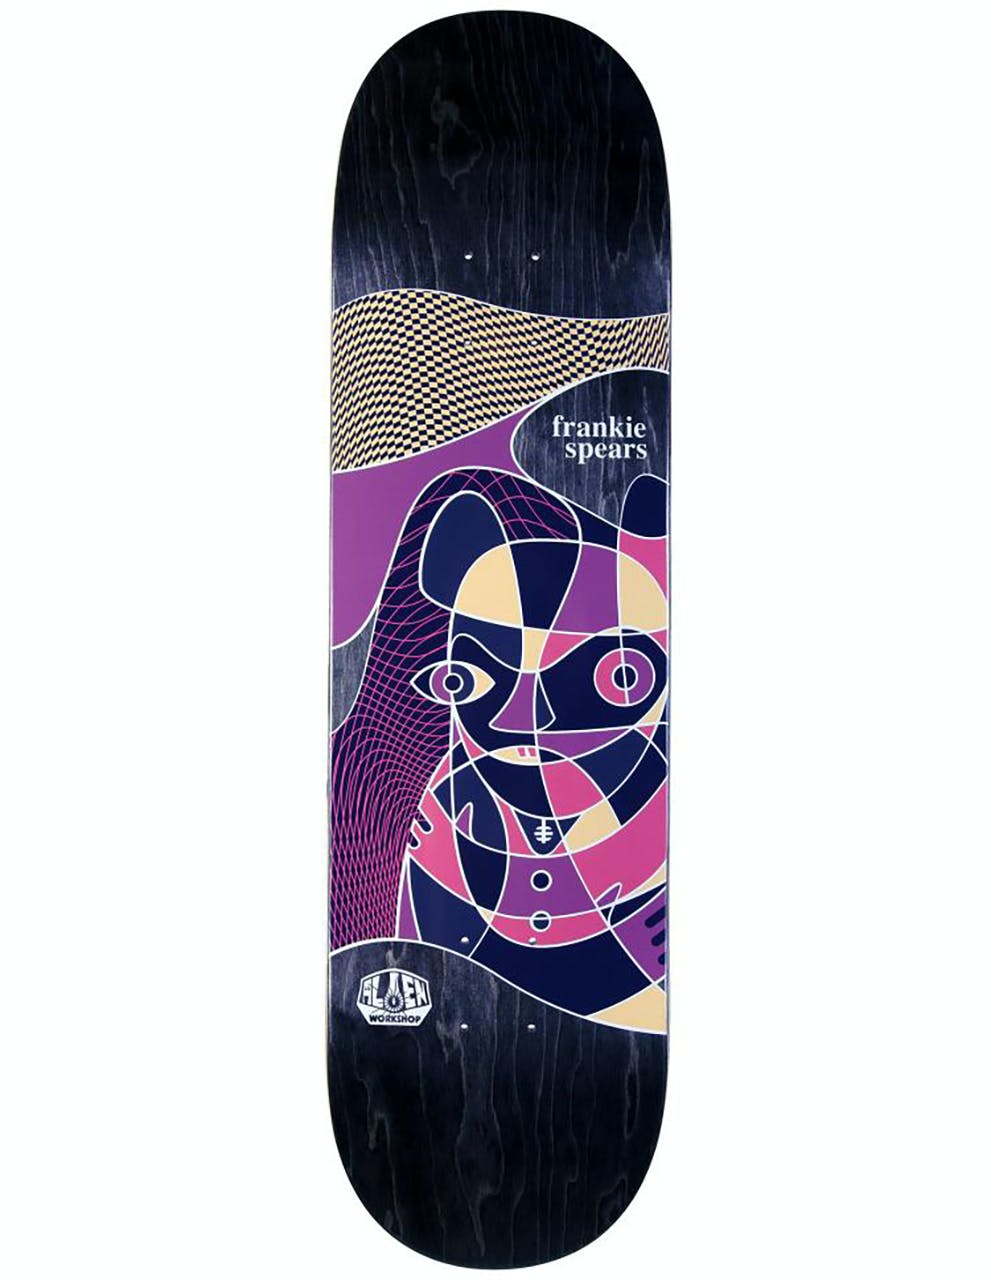 Alien Workshop Spears Abberation Skateboard Deck  - 8.375"